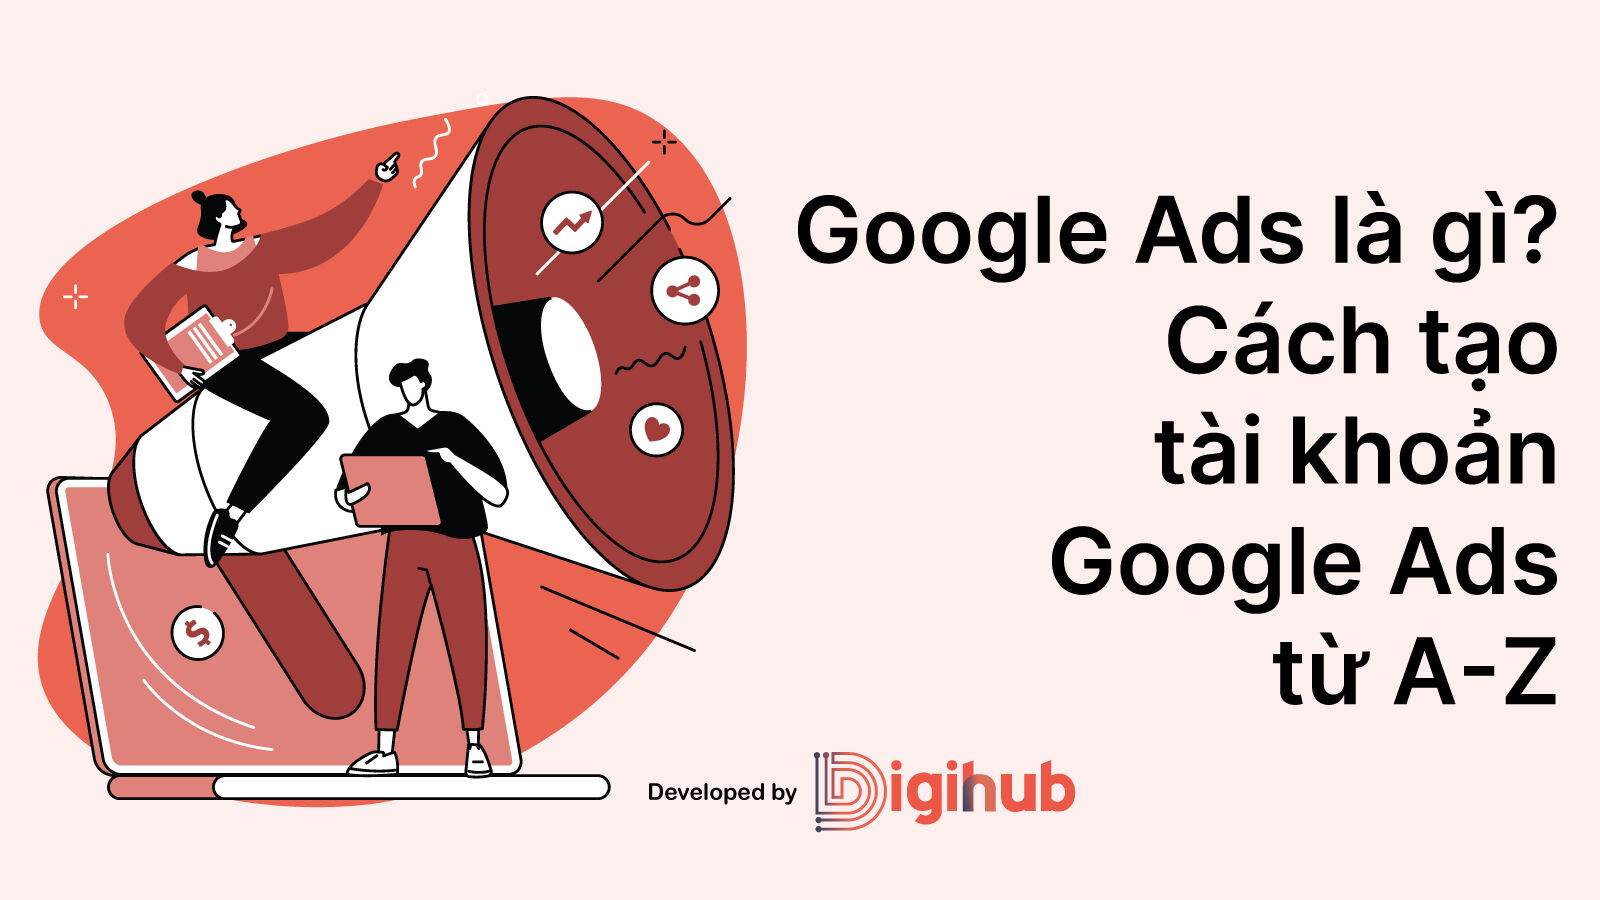 Google ads là gì? Cách tạo tài khoản Google Ads từ A-Z